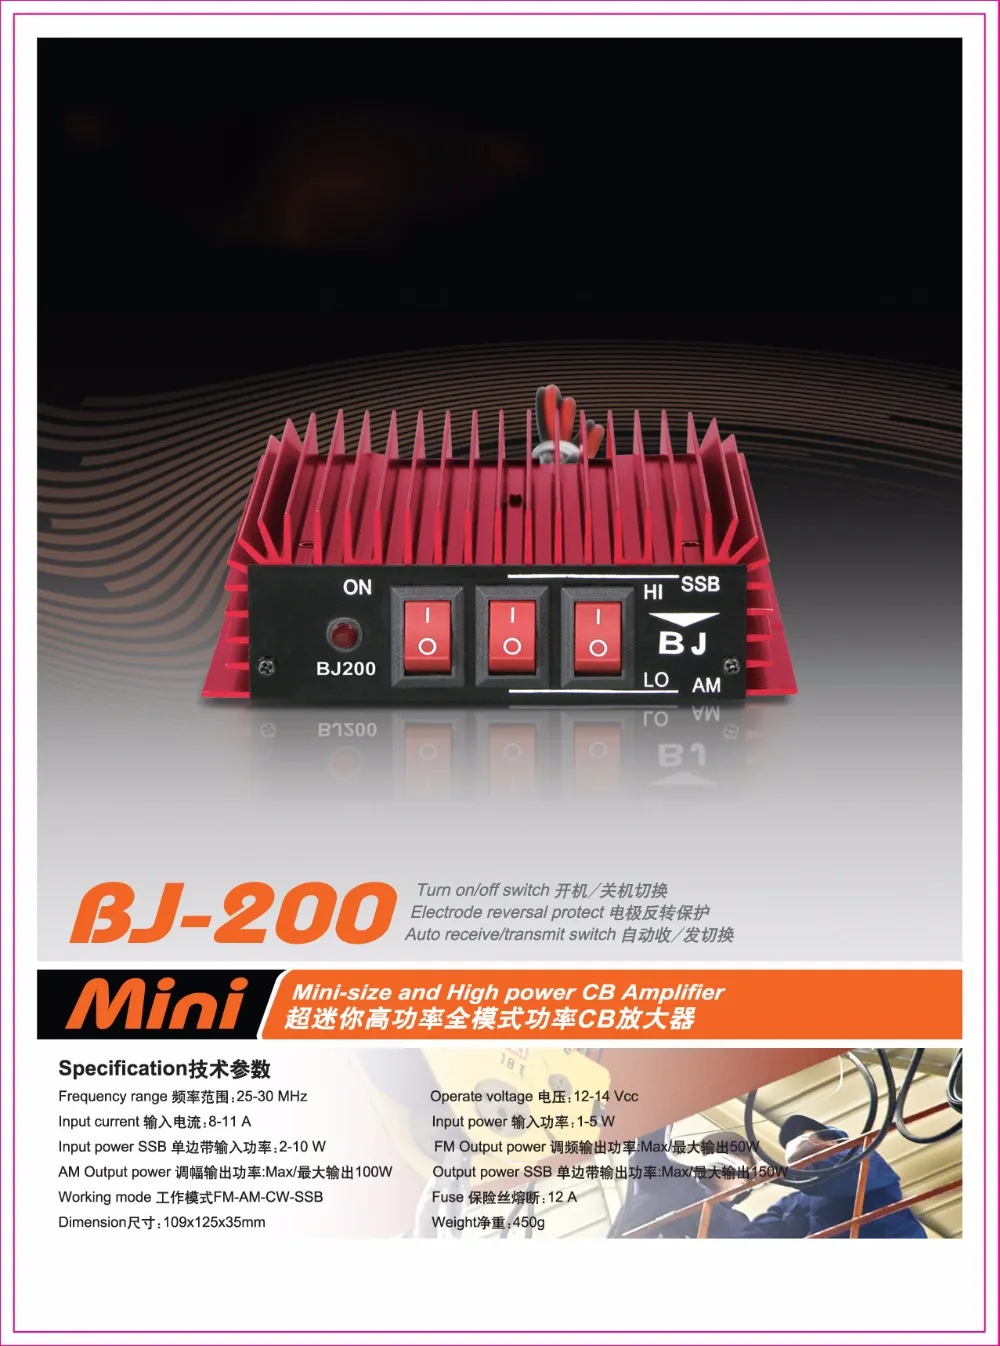 Baojie BJ-200 усилитель мощности 50 Вт FM 100 Вт AM 150 Вт SSB 25-30 МГц мини-размер и высокая мощность CB радиоусилитель BJ200